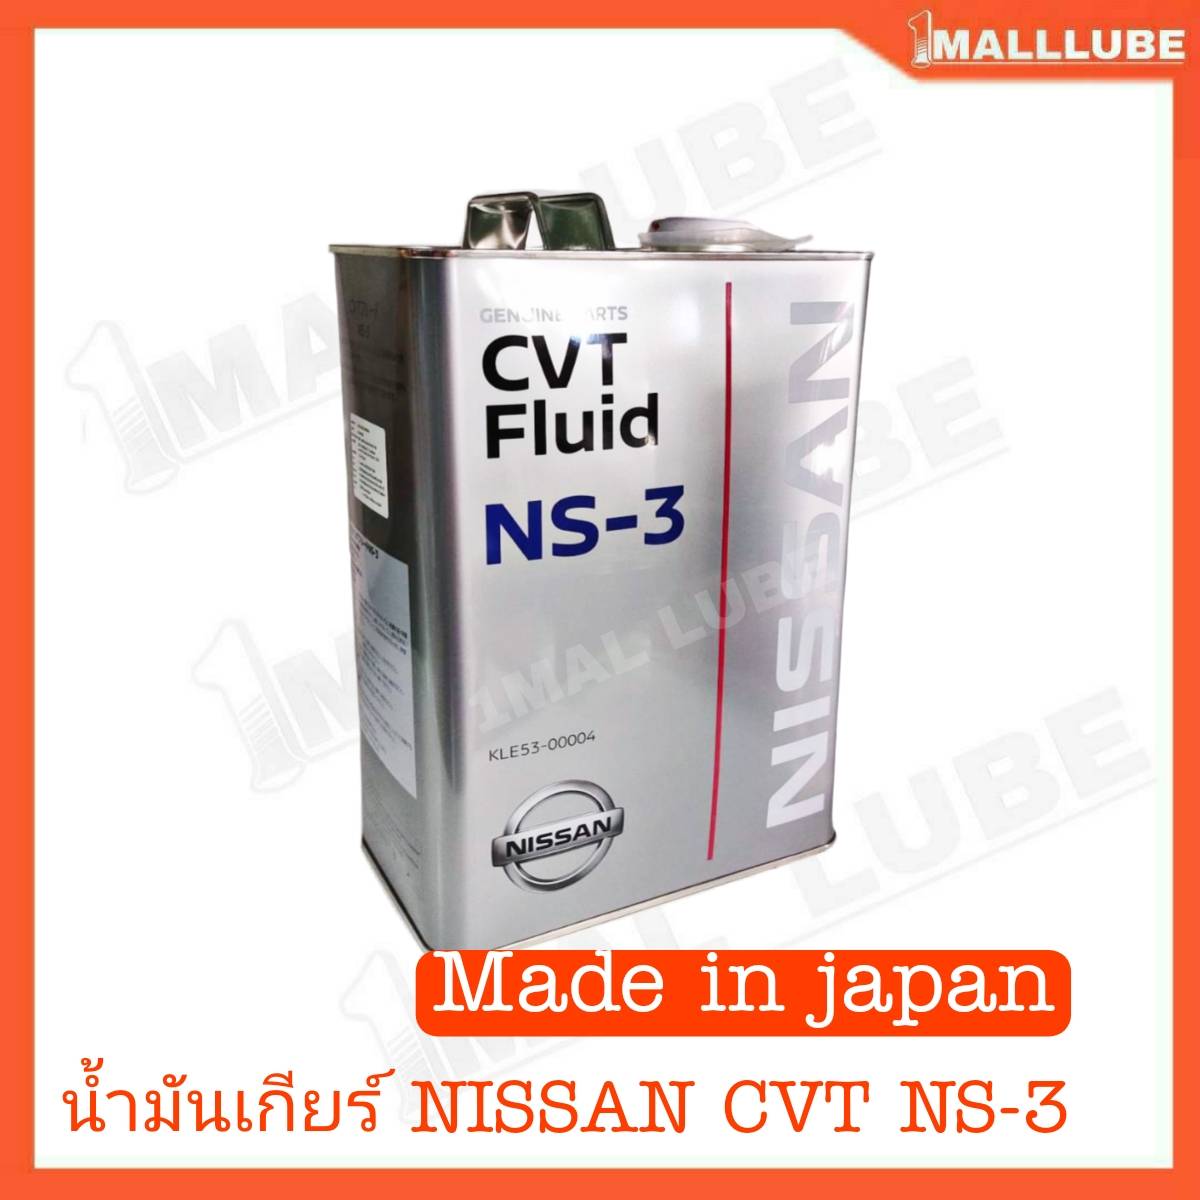 น้ำมันเกียร์ NISSAN CVT NS-3 น้ำมันเกียร์อัตโนมัติ 4ลิตร แท้ นิสสัน Made in japan